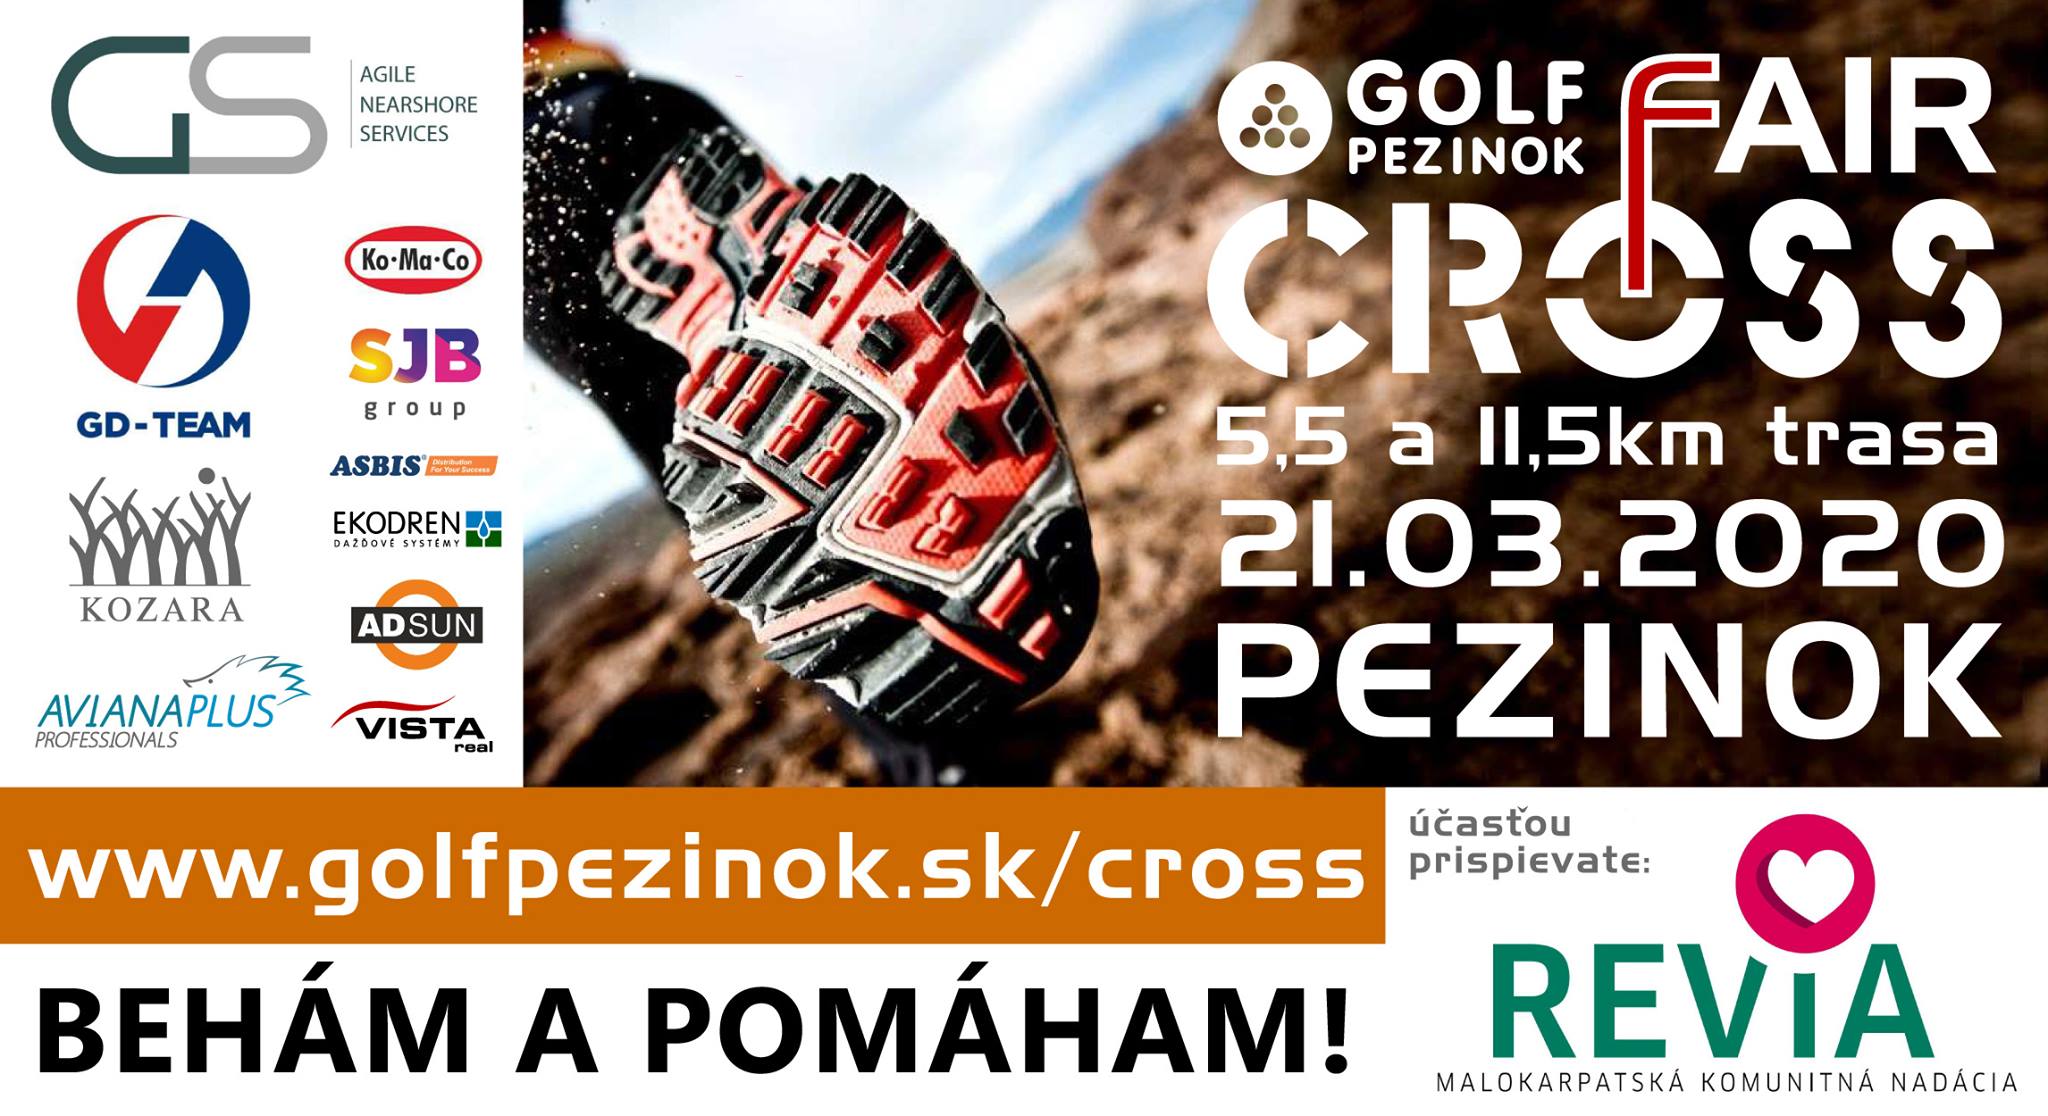 Golf Pezinok Fair Cross 2020